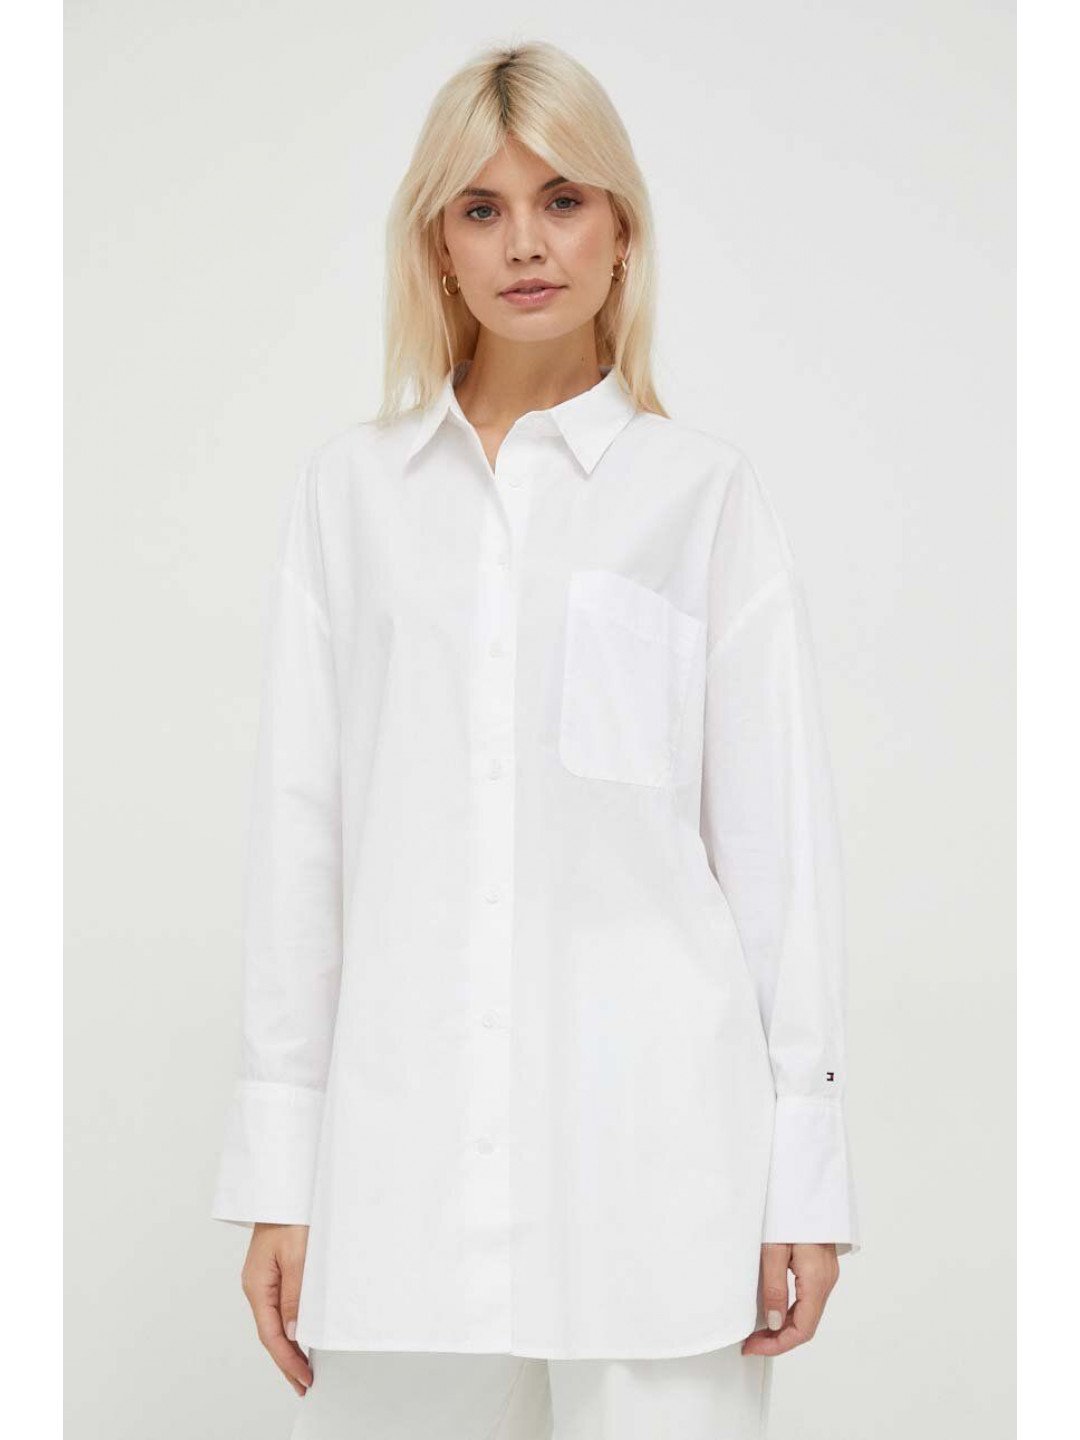 Košile Tommy Hilfiger bílá barva relaxed s klasickým límcem WW0WW40540